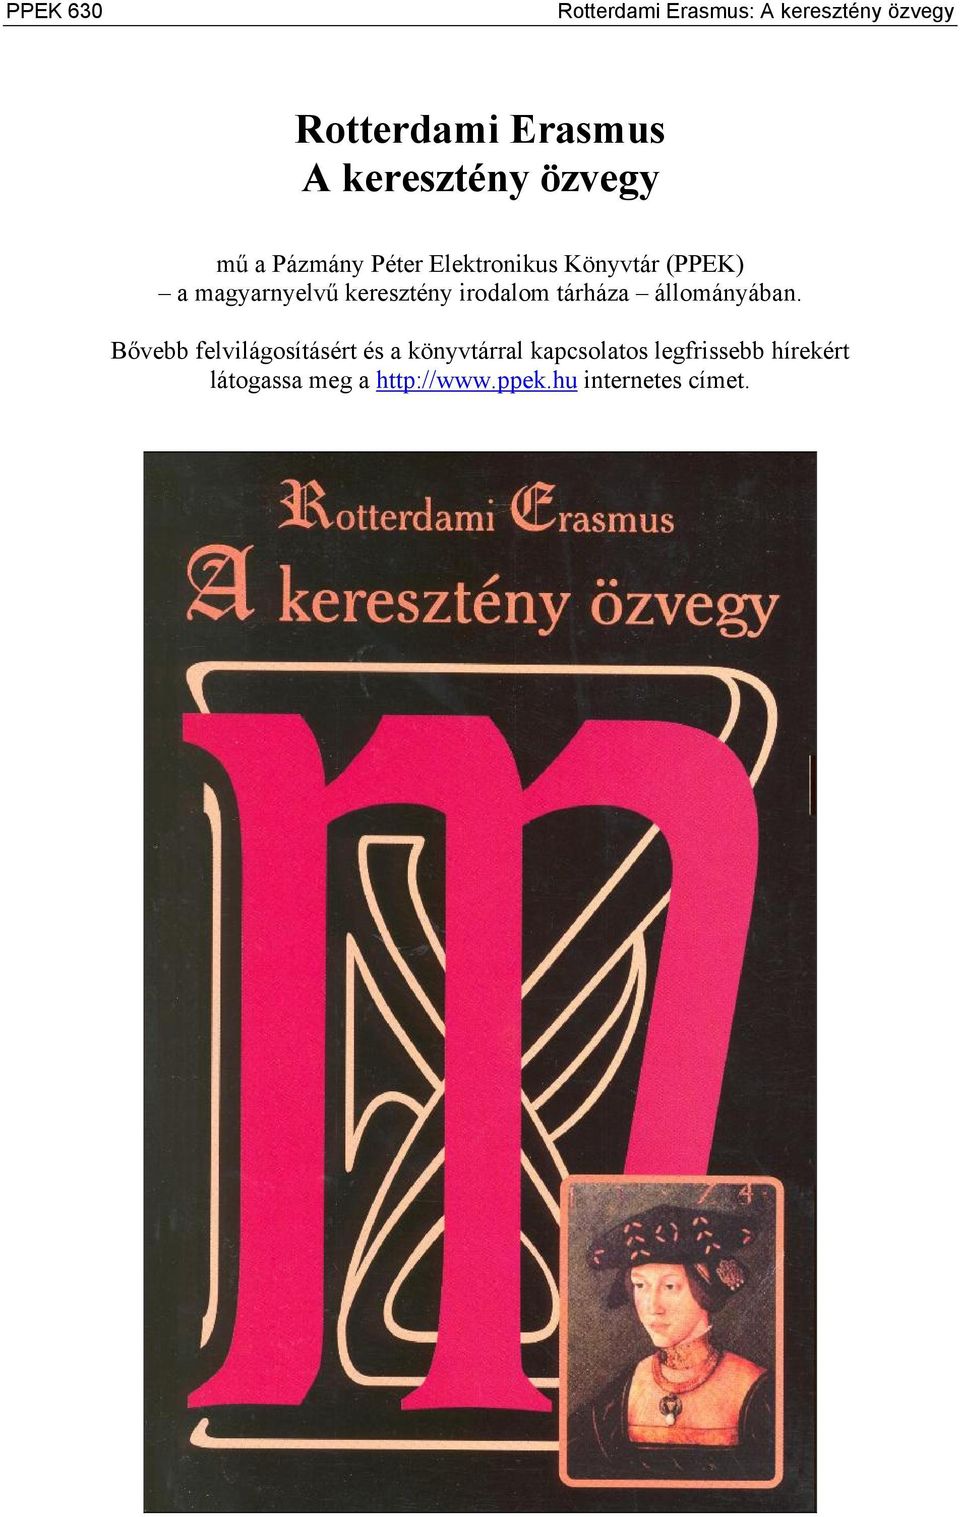 magyarnyelvű keresztény irodalom tárháza állományában.